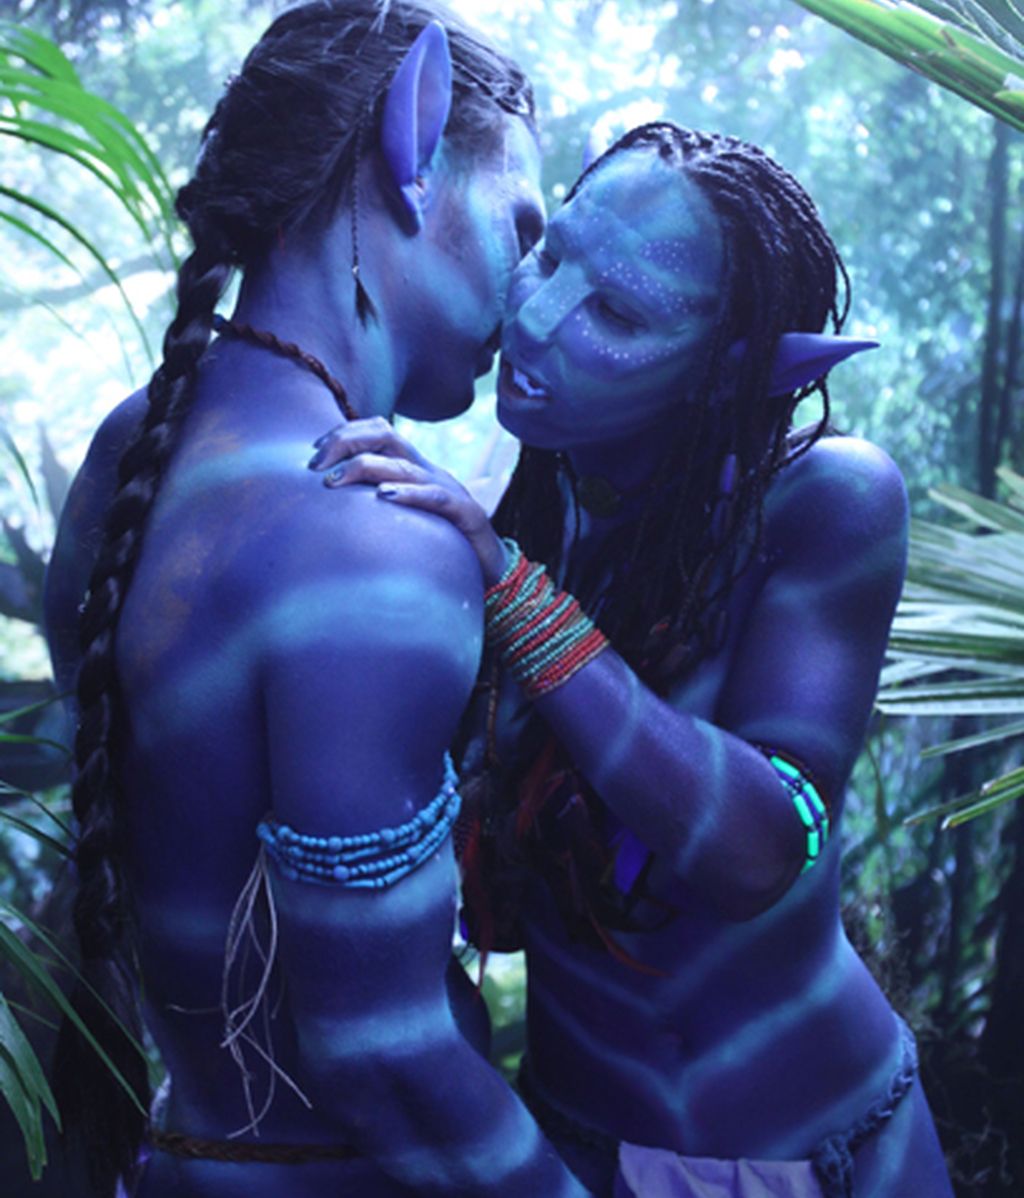 Avatar, la versión porno en 3D